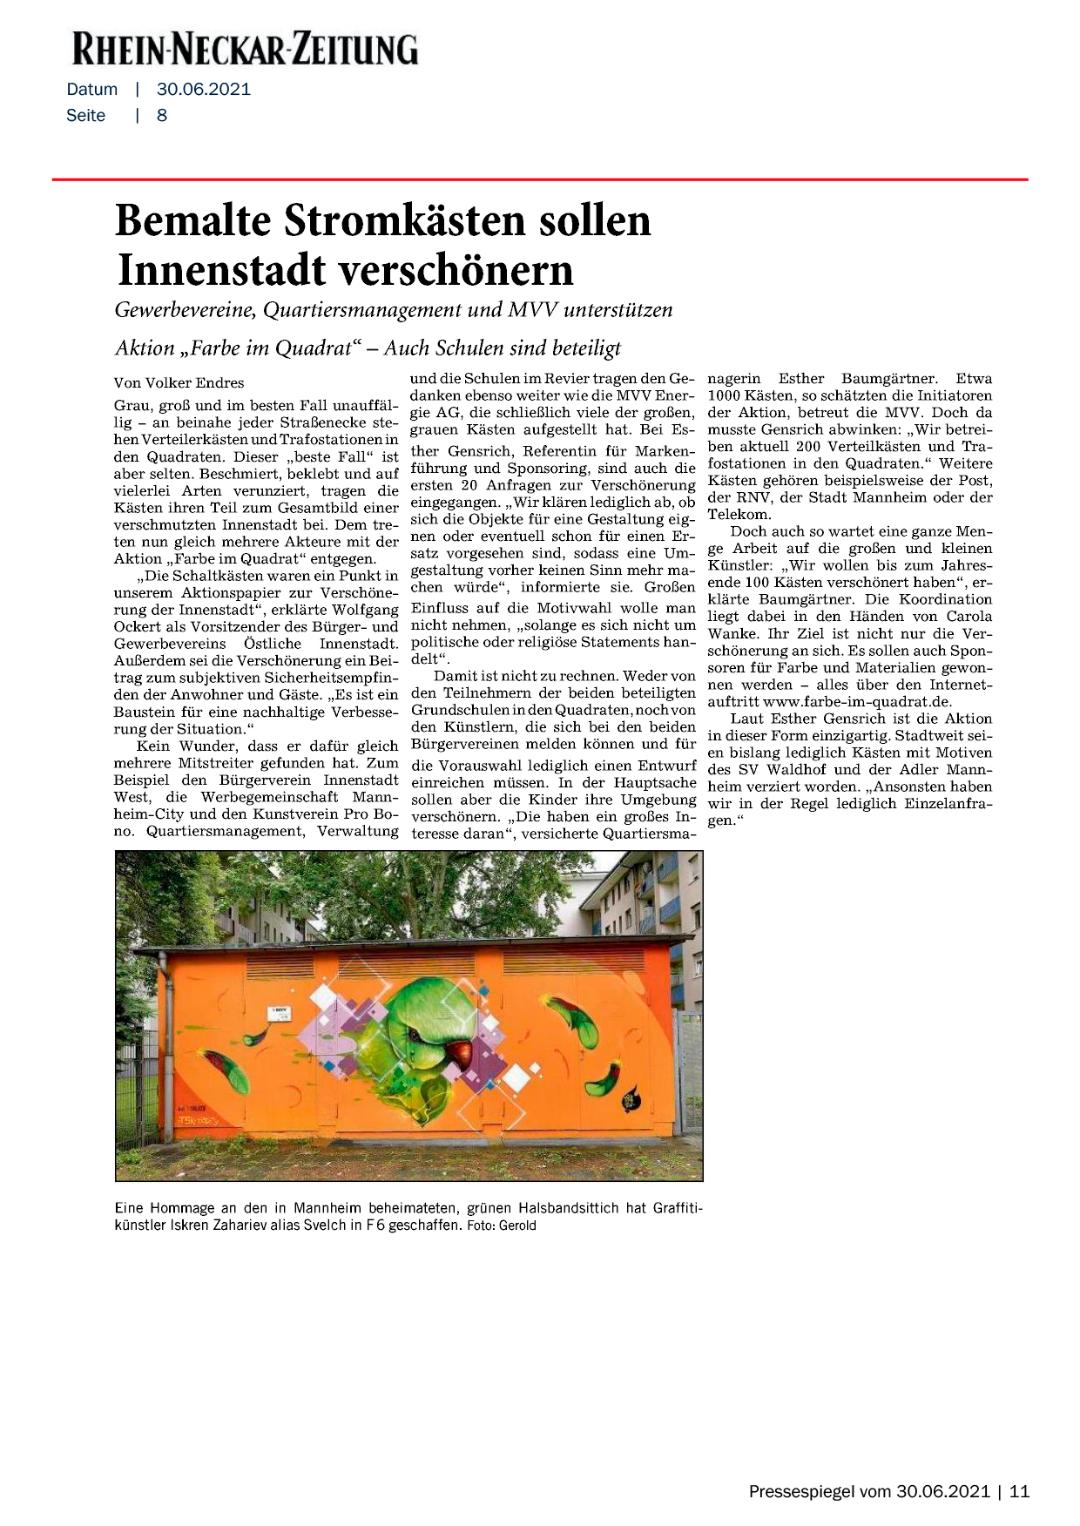 Rhein Neckar Zeitung bemalte Stromksten